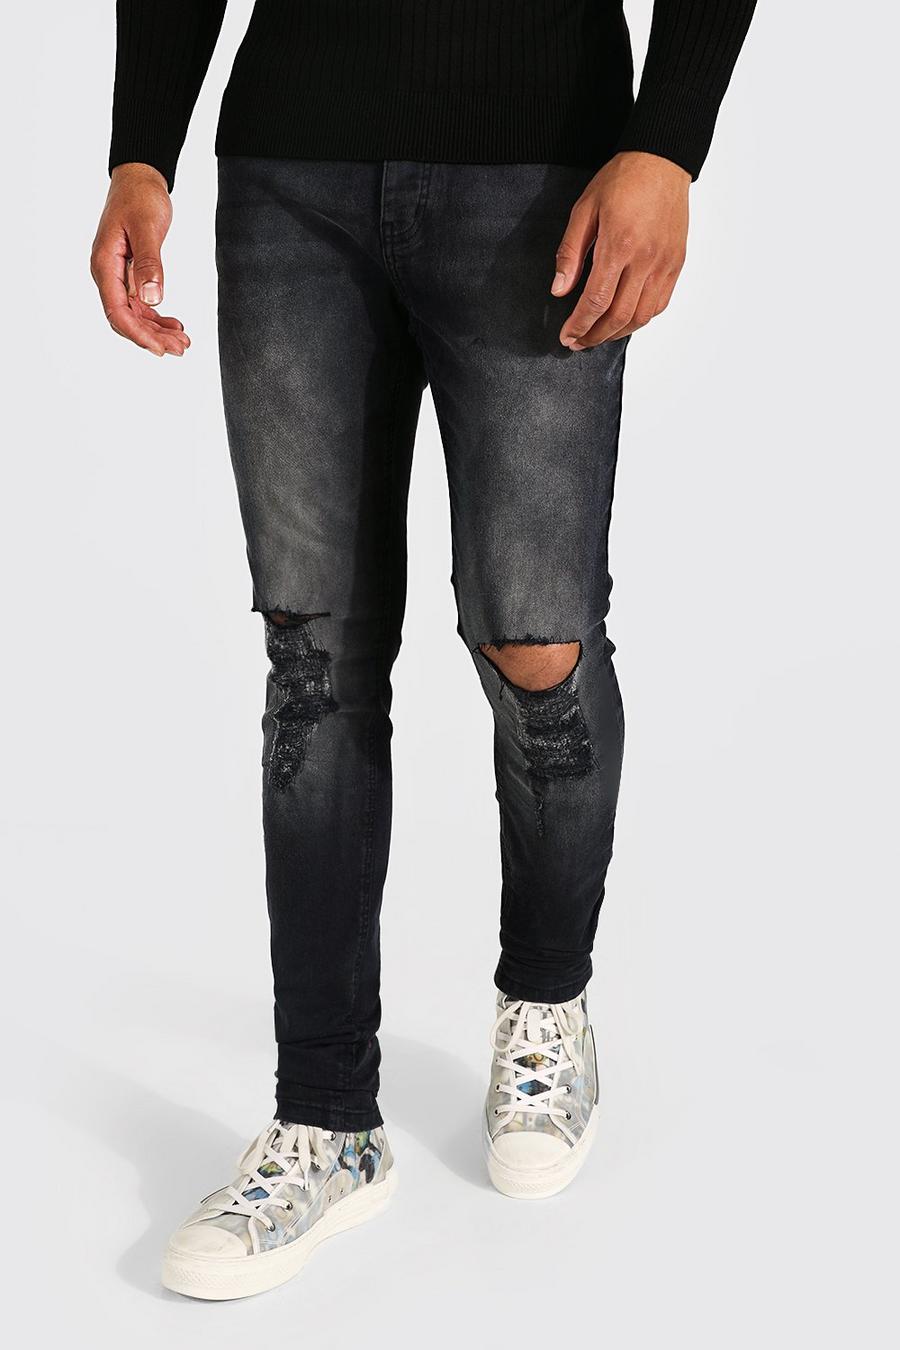 שחור דהוי סקיני ג'ינס נמתח עם בד משופשף בברכיים, לגברים גבוהים image number 1